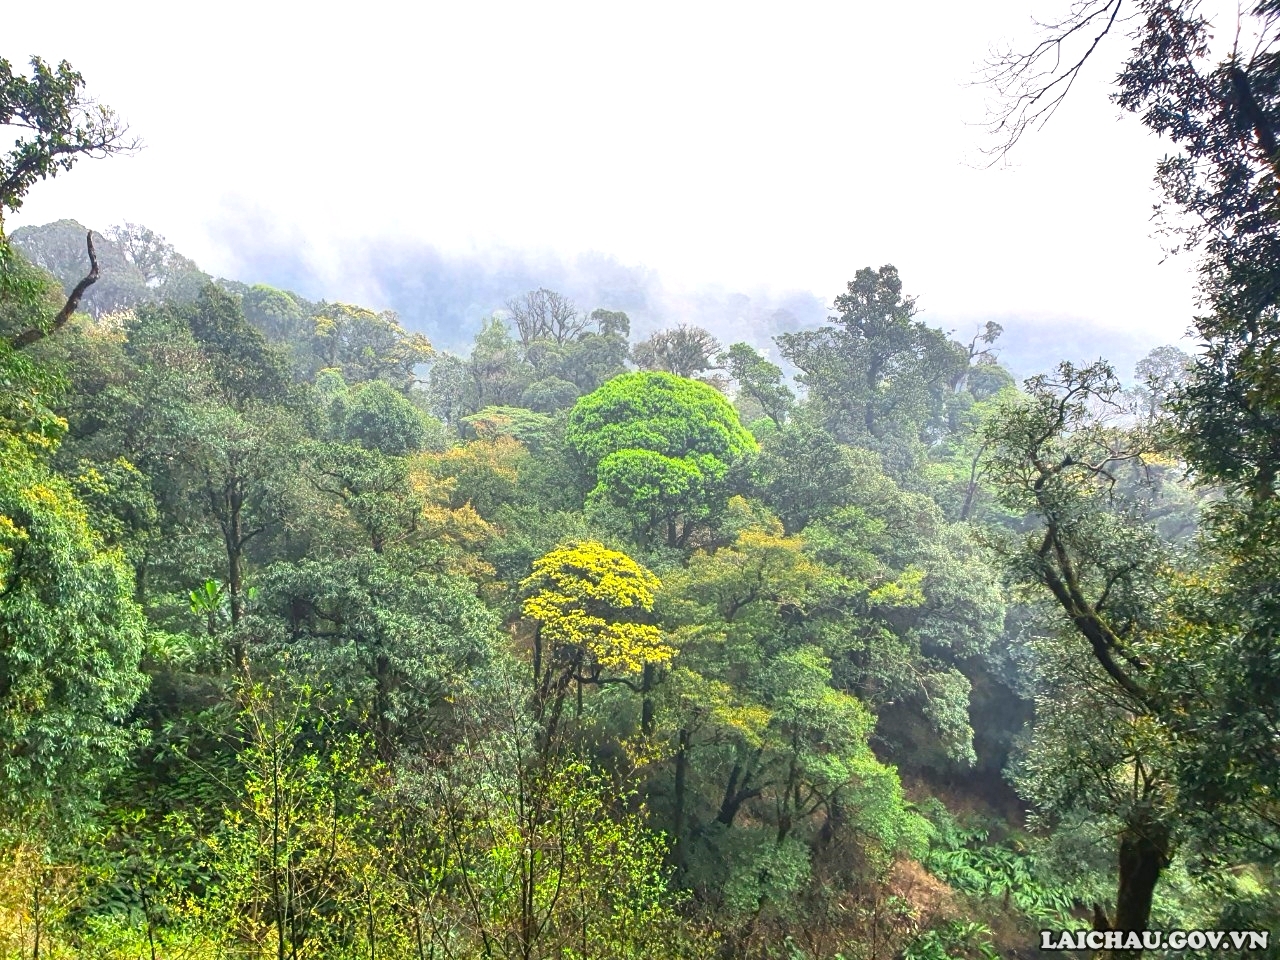 Trên cung đường chinh phục Pu Ta Leng, du khách sẽ được ngắm những cánh rừng nguyên sinh với những cây to hàng trăm năm tuổi.